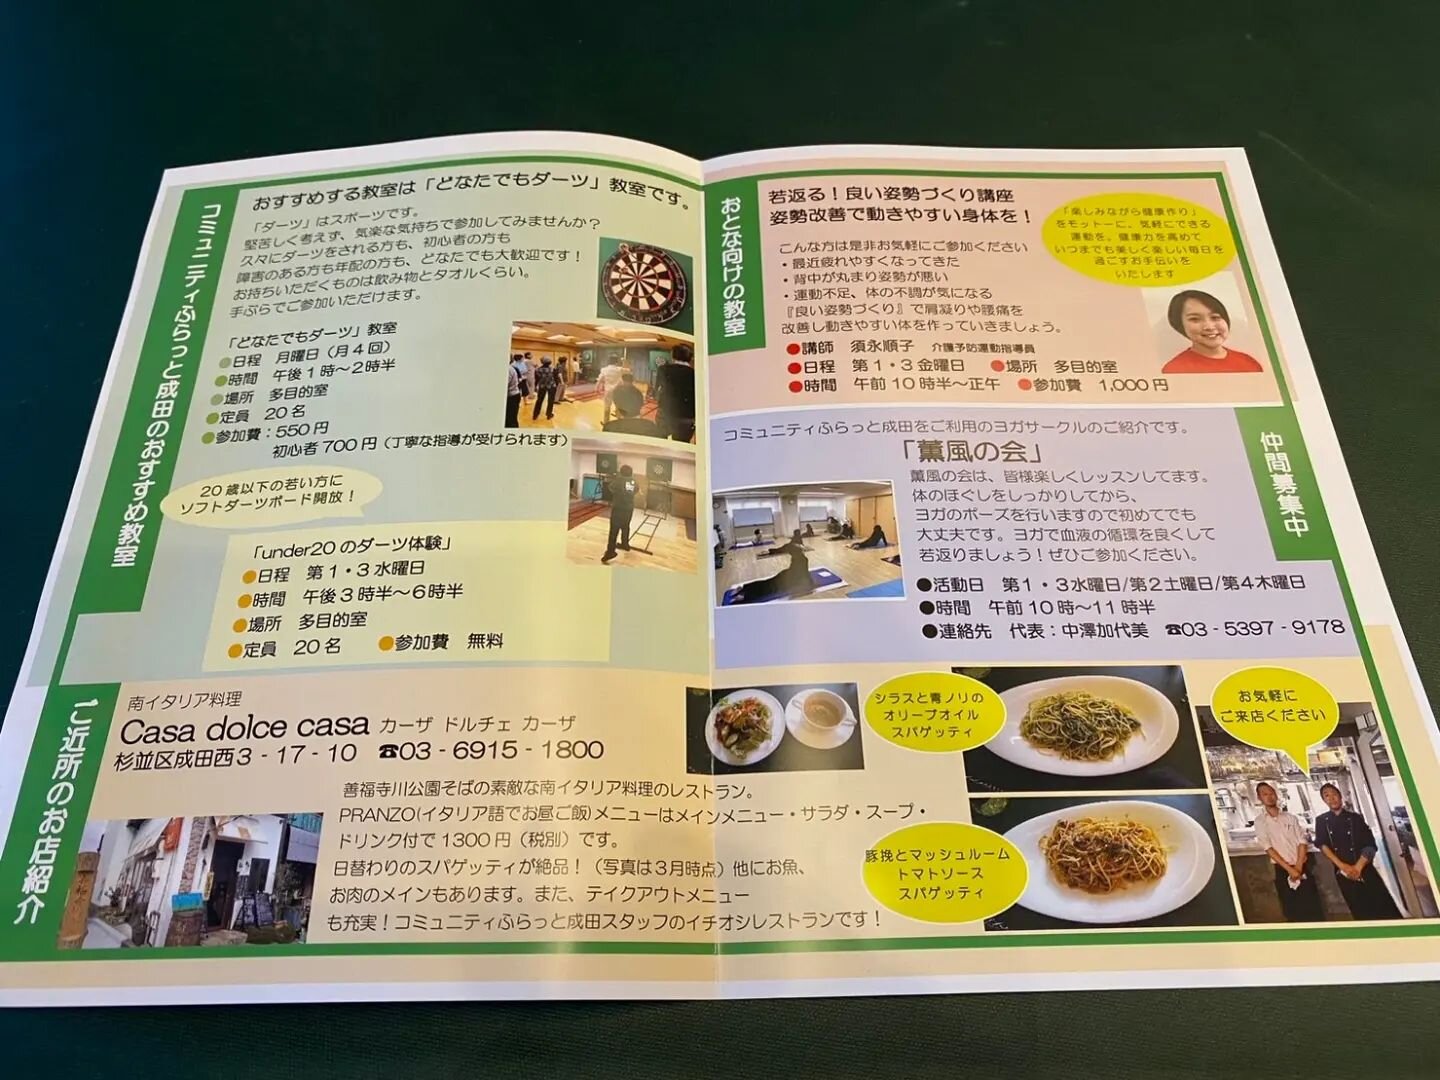 日本語🇯🇵English🇬🇧Italiano🇮🇹
🇯🇵成田コミュニティーさんに掲載していただきました！！
今回はランチでのご紹介を受けさせていただきました！
カーザドルチェカーザが皆様のコミュニティー拡大の場の１つになる場所になるのも良いと思います！
ママ友同士のお食事や記念日での食事色々なシーンで使えると思いますのでよろしくお願いします(^^)

🇬🇧We got published in the new pamphlet of Narita community cente